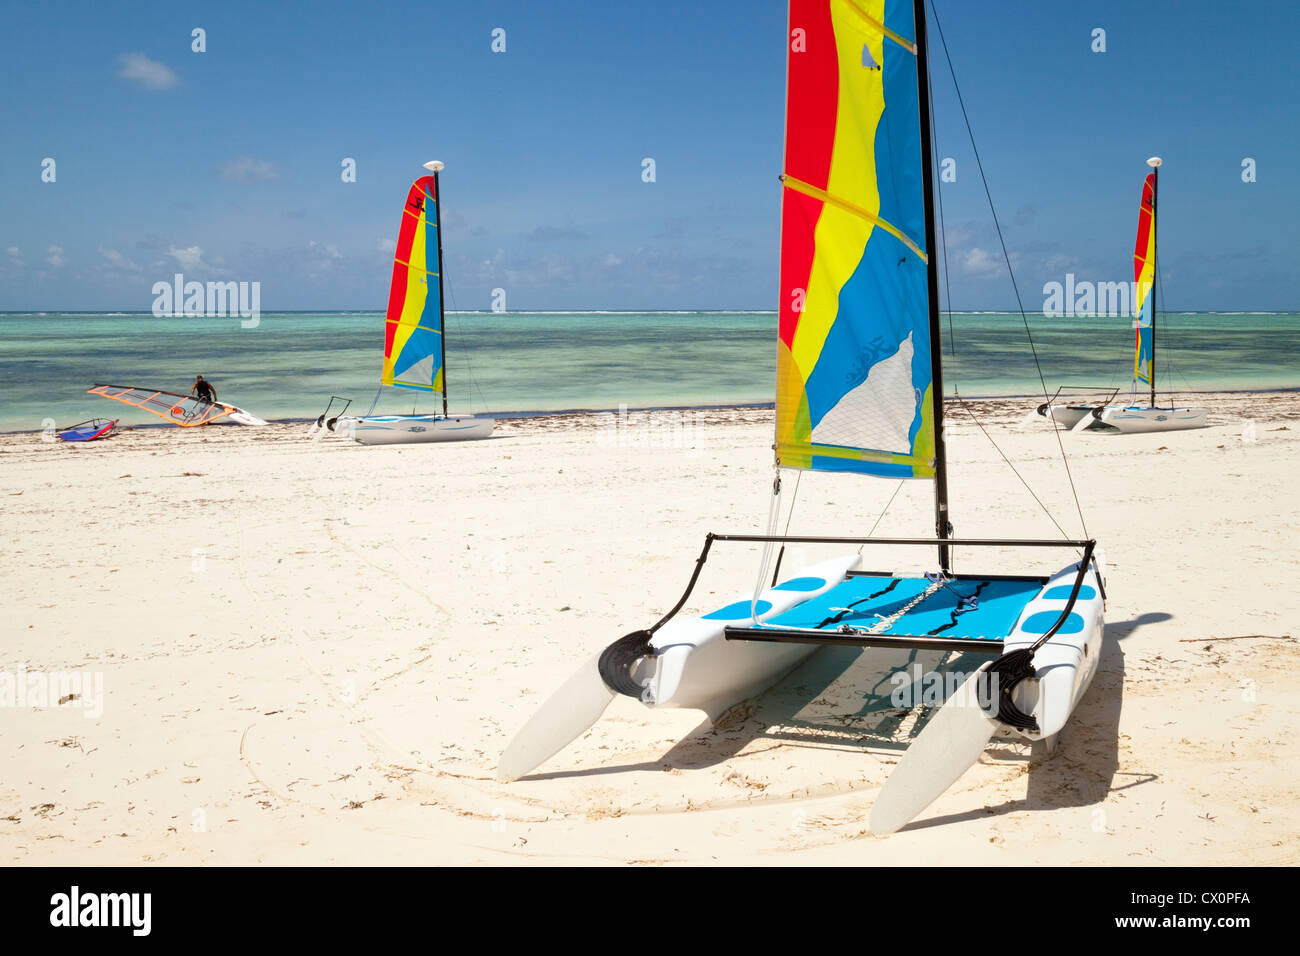 Drei Hobie Cat Katamarane und ein Windsurfer am Strand von Bwejuu, Zanzibar Afrika Stockfoto